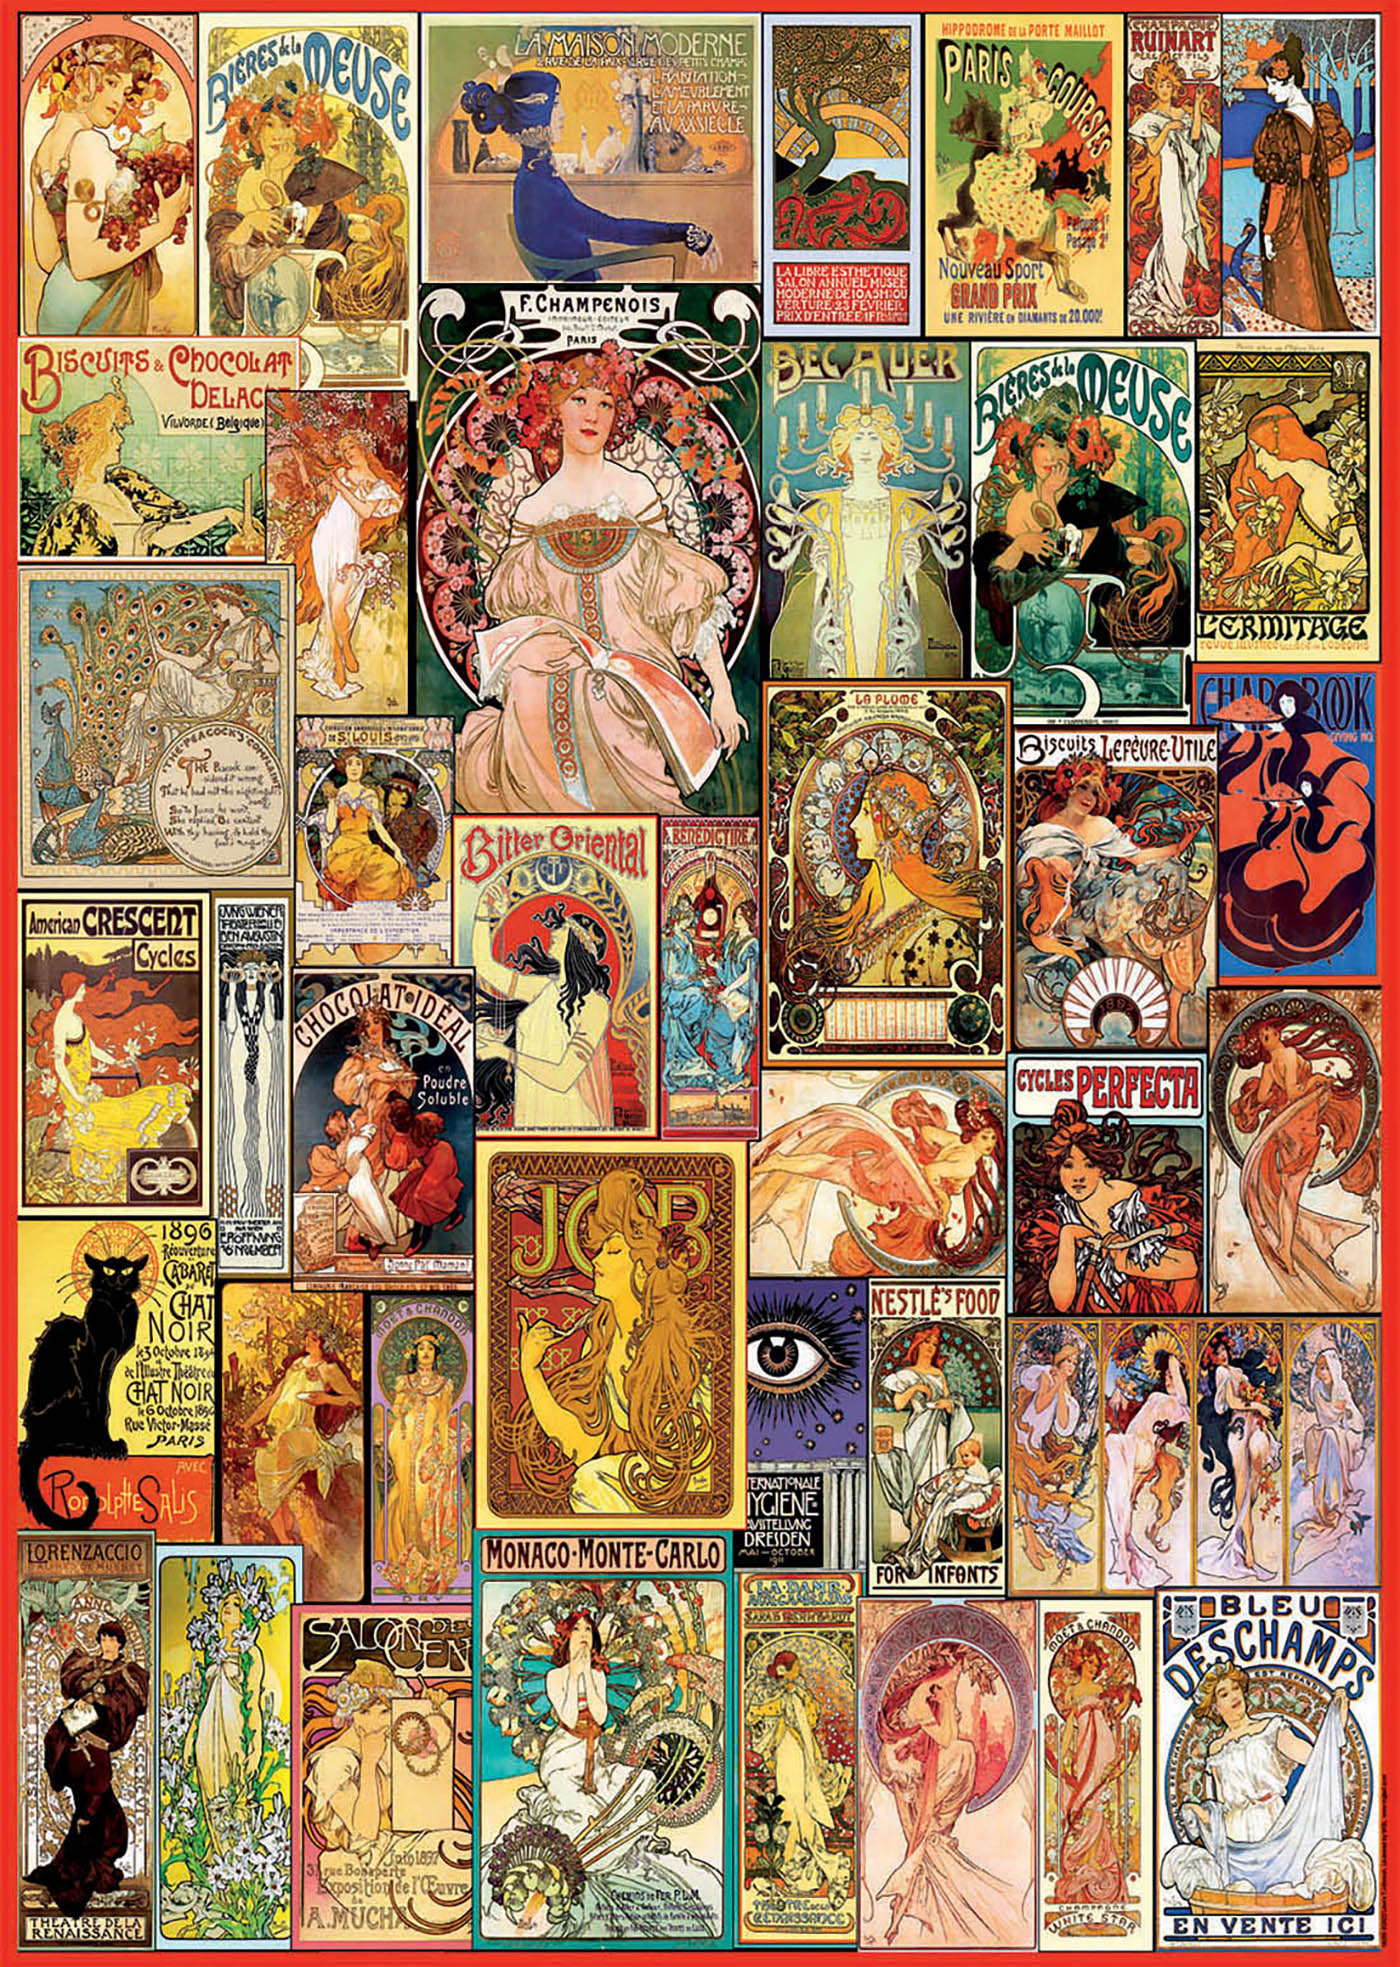 1000 Collage Art Nouveau